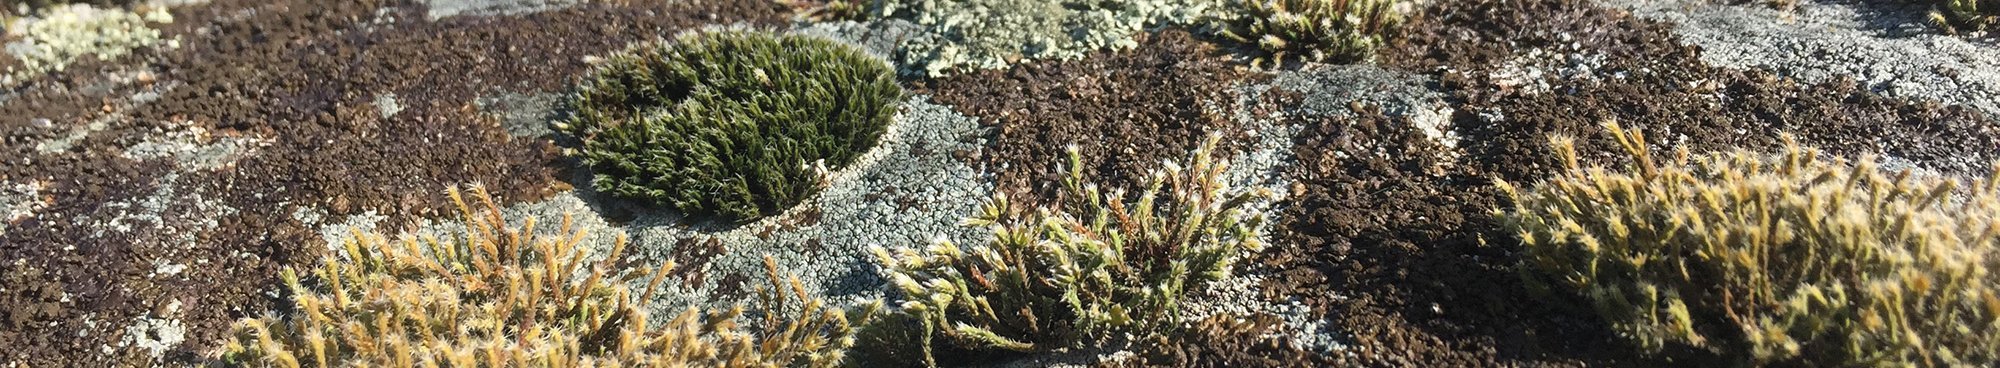 Paysage en miniature de lichens et de bryophytes sur un bloc granitique du Plateau